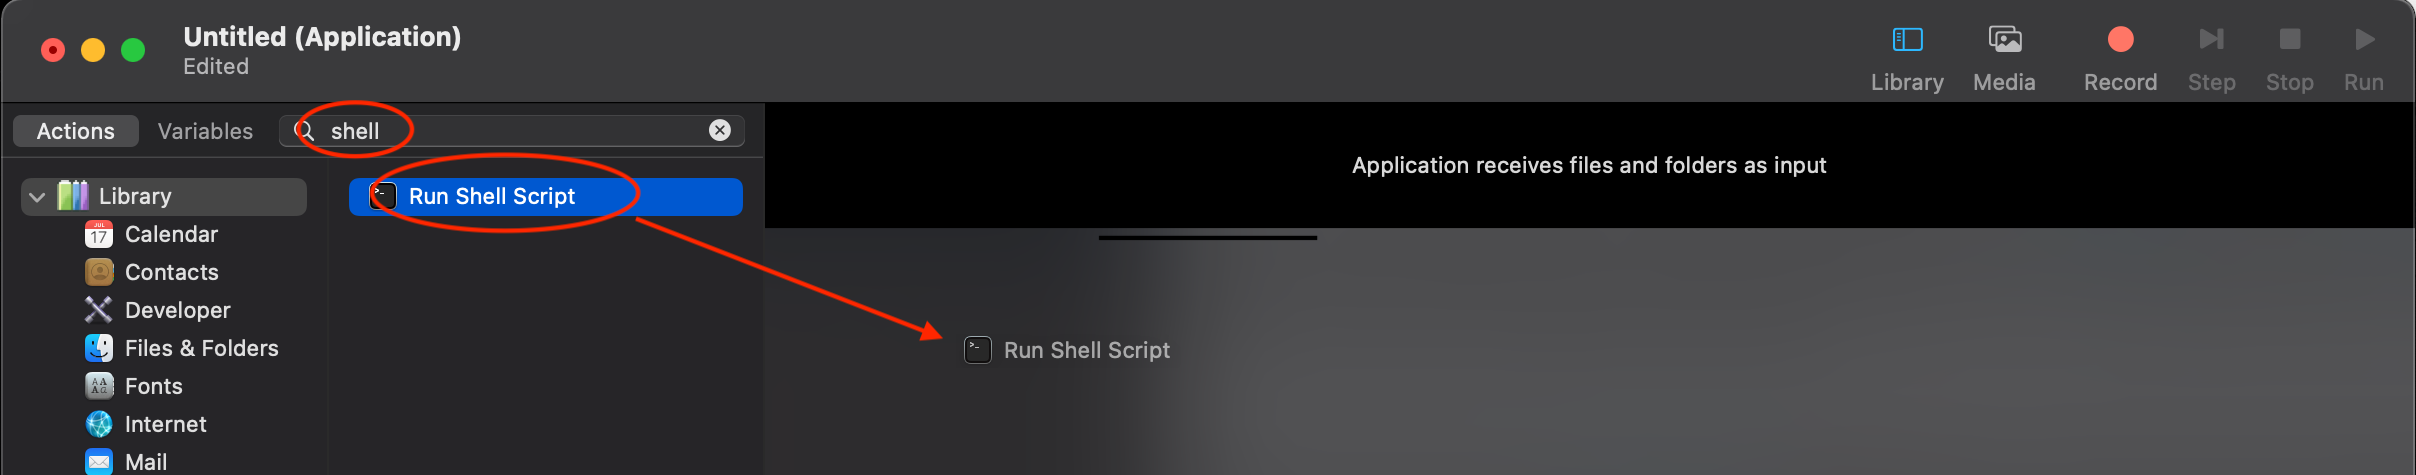 add new shell script